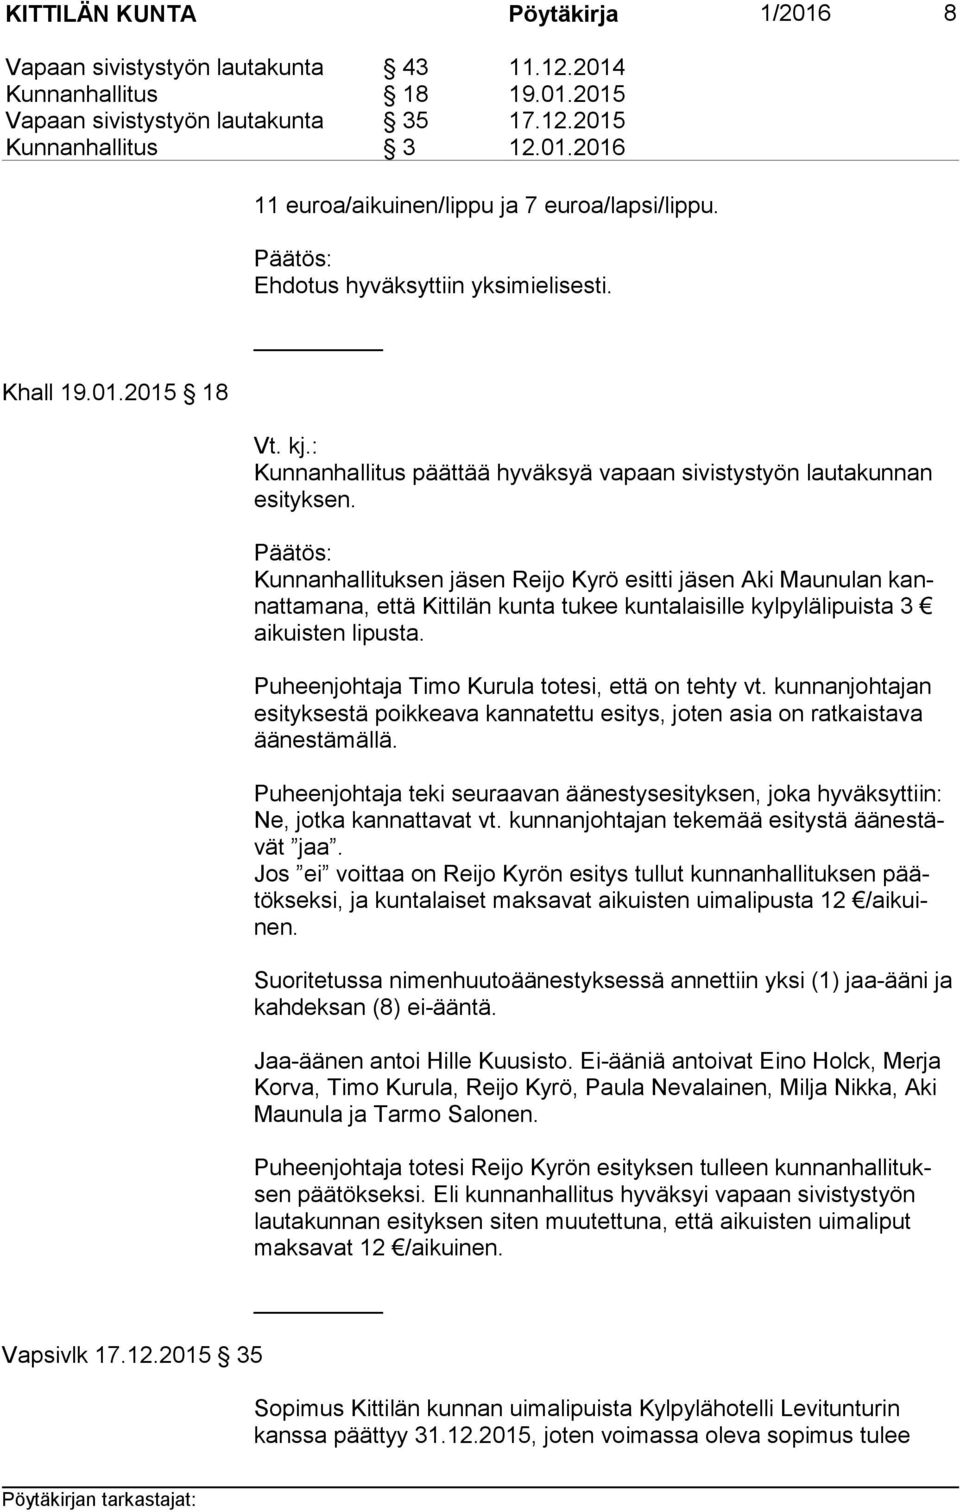 Kunnanhallituksen jäsen Reijo Kyrö esitti jäsen Aki Maunulan kannat ta ma na, että Kittilän kunta tukee kuntalaisille kylpylälipuista 3 ai kuis ten lipusta.